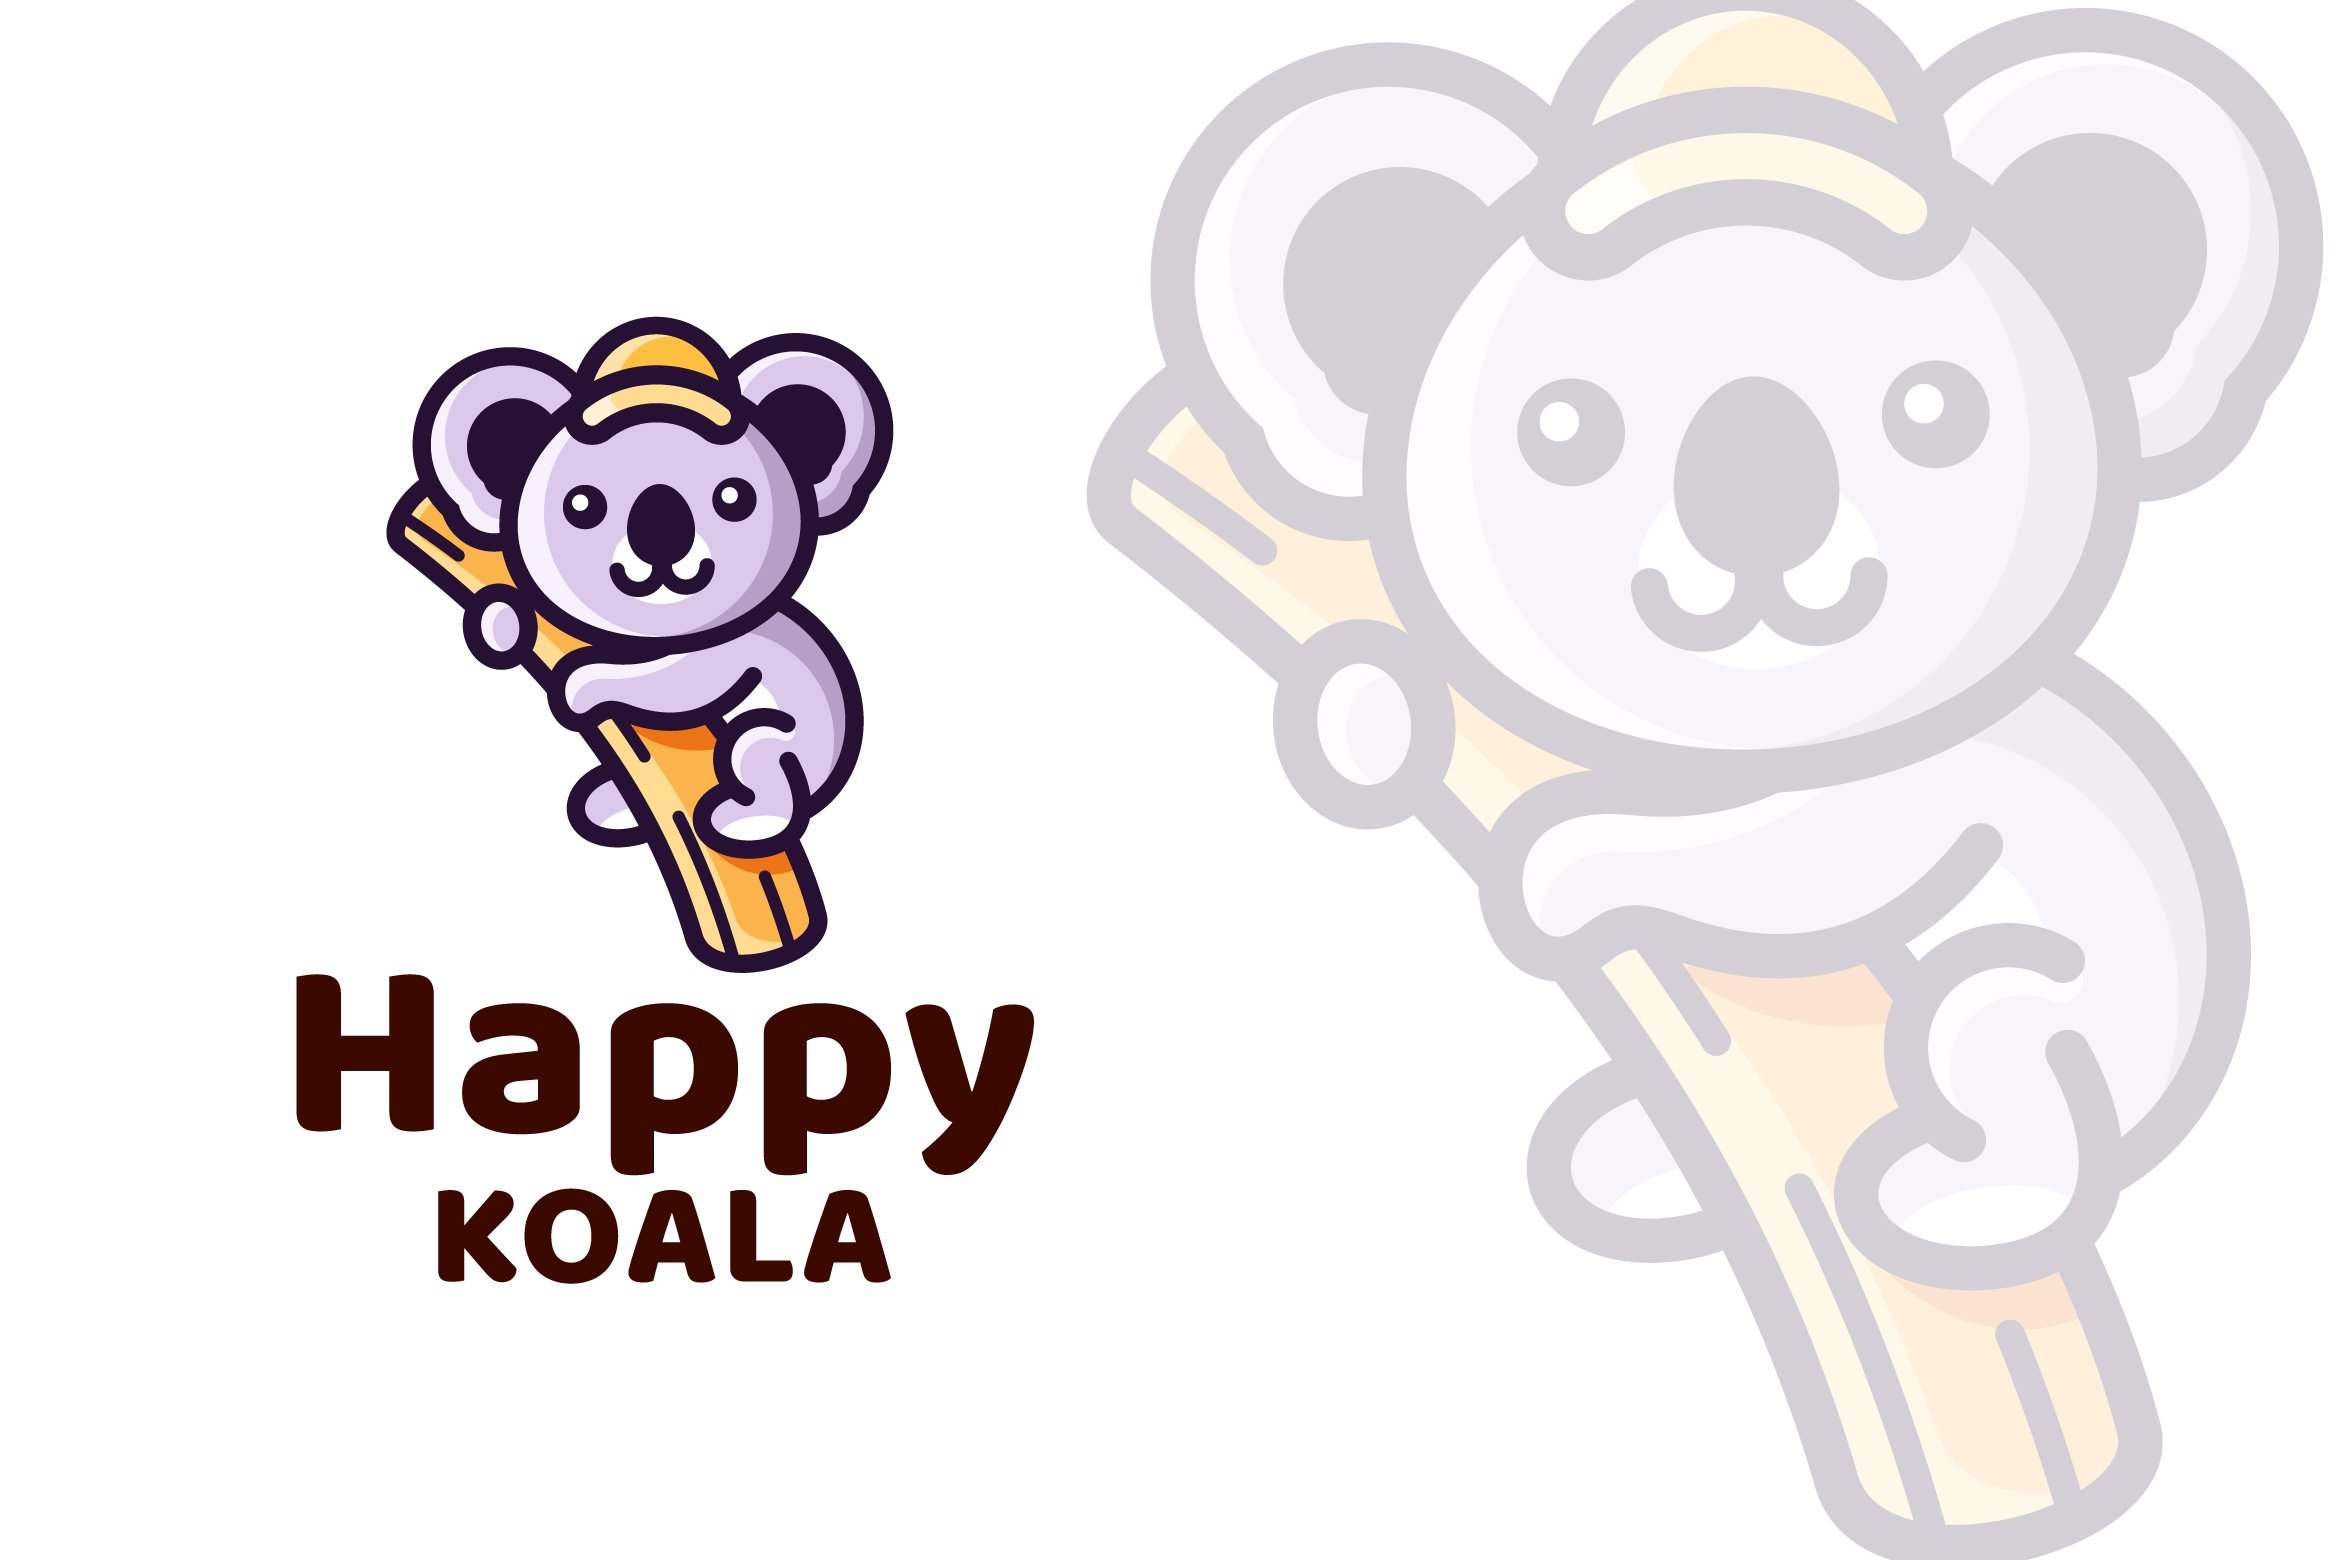 Happy Koala Cute Logo Template cover image.